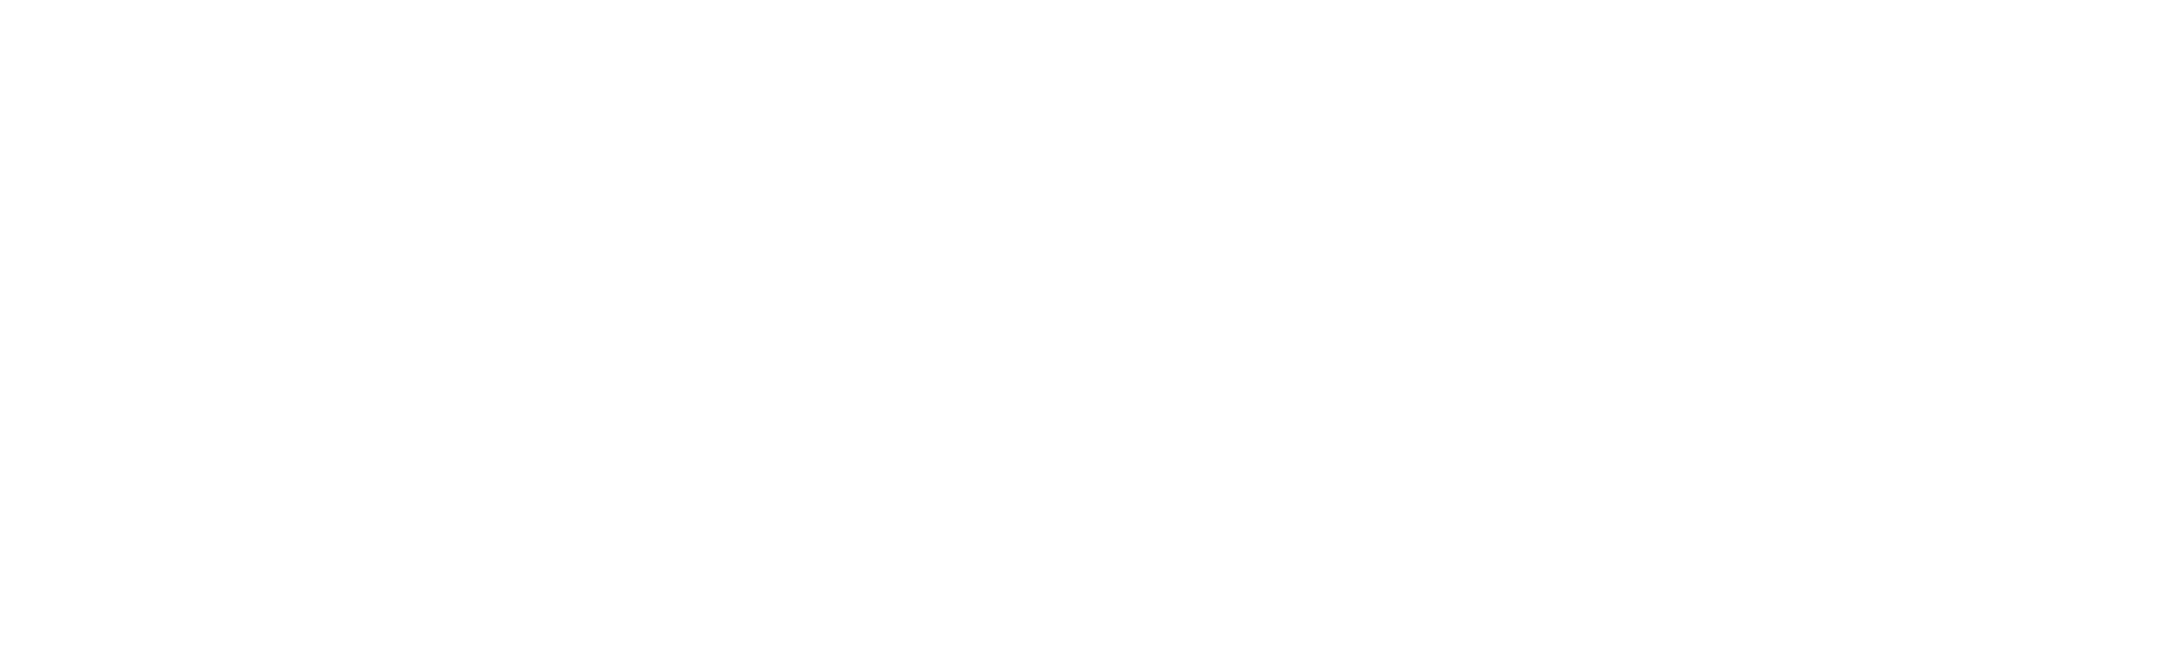 Future:Hungary